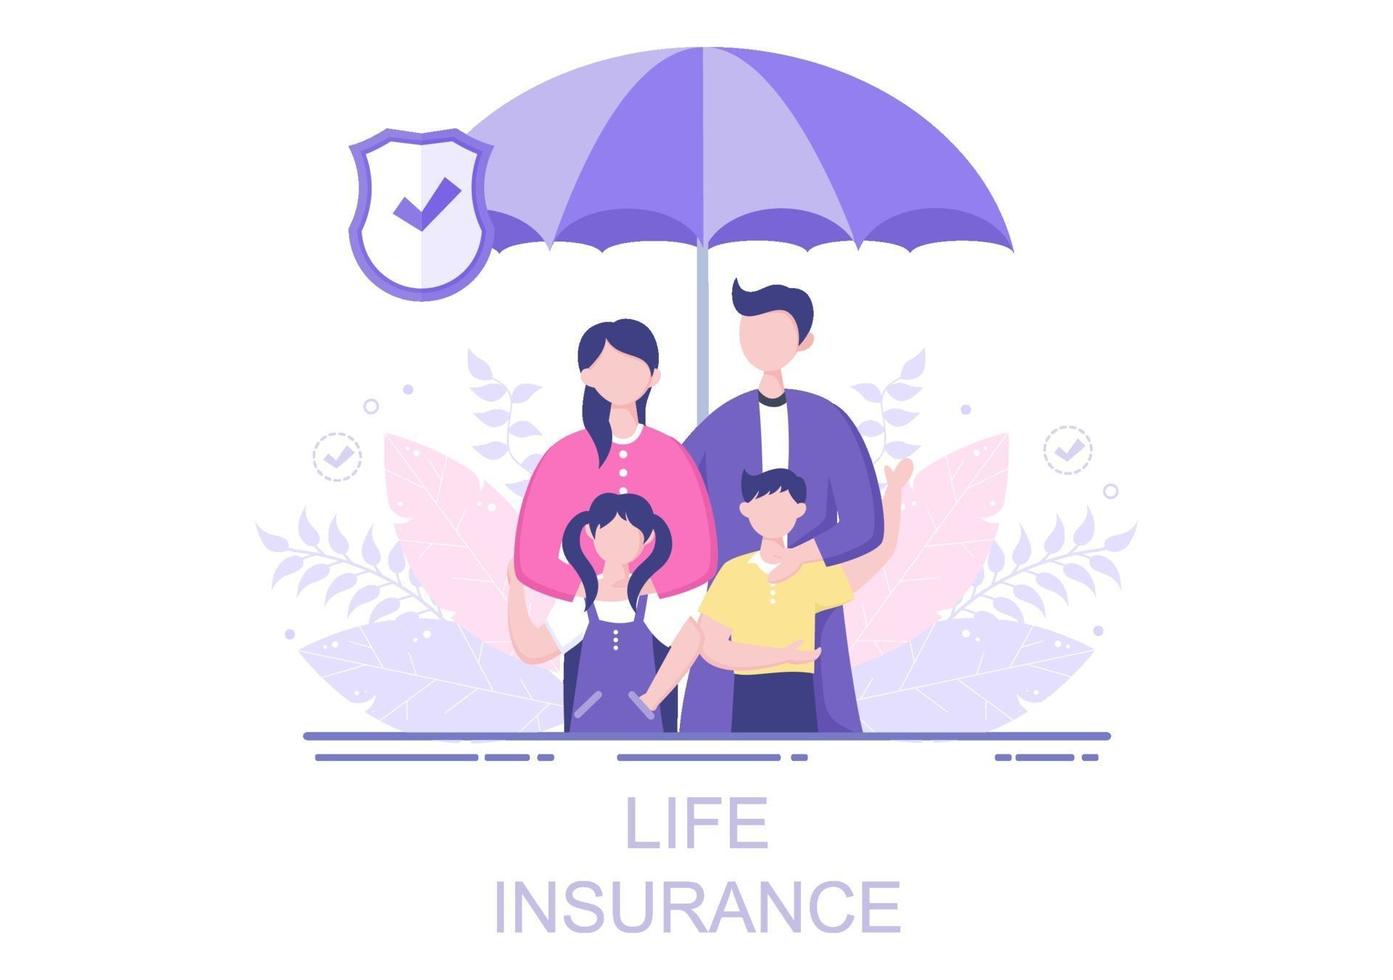 seguro de vida é usado para fundos de pensão, saúde, finanças, serviços médicos e proteção vetor